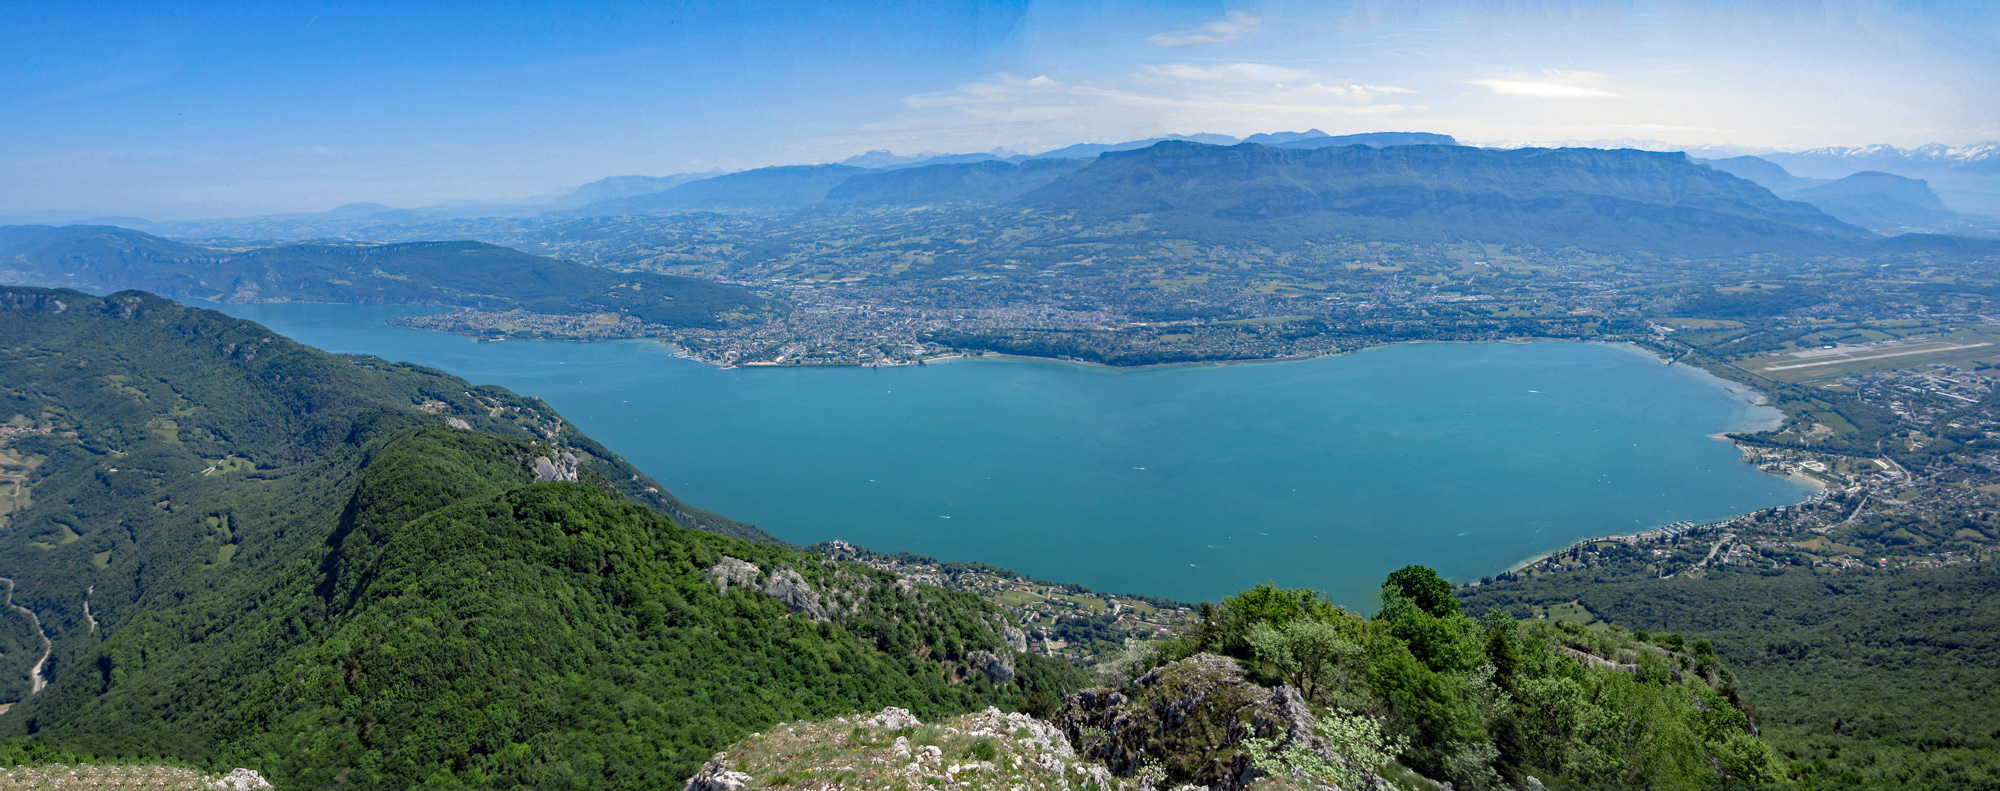 Panorama du lac du Bourget depuis la Dent du Chat